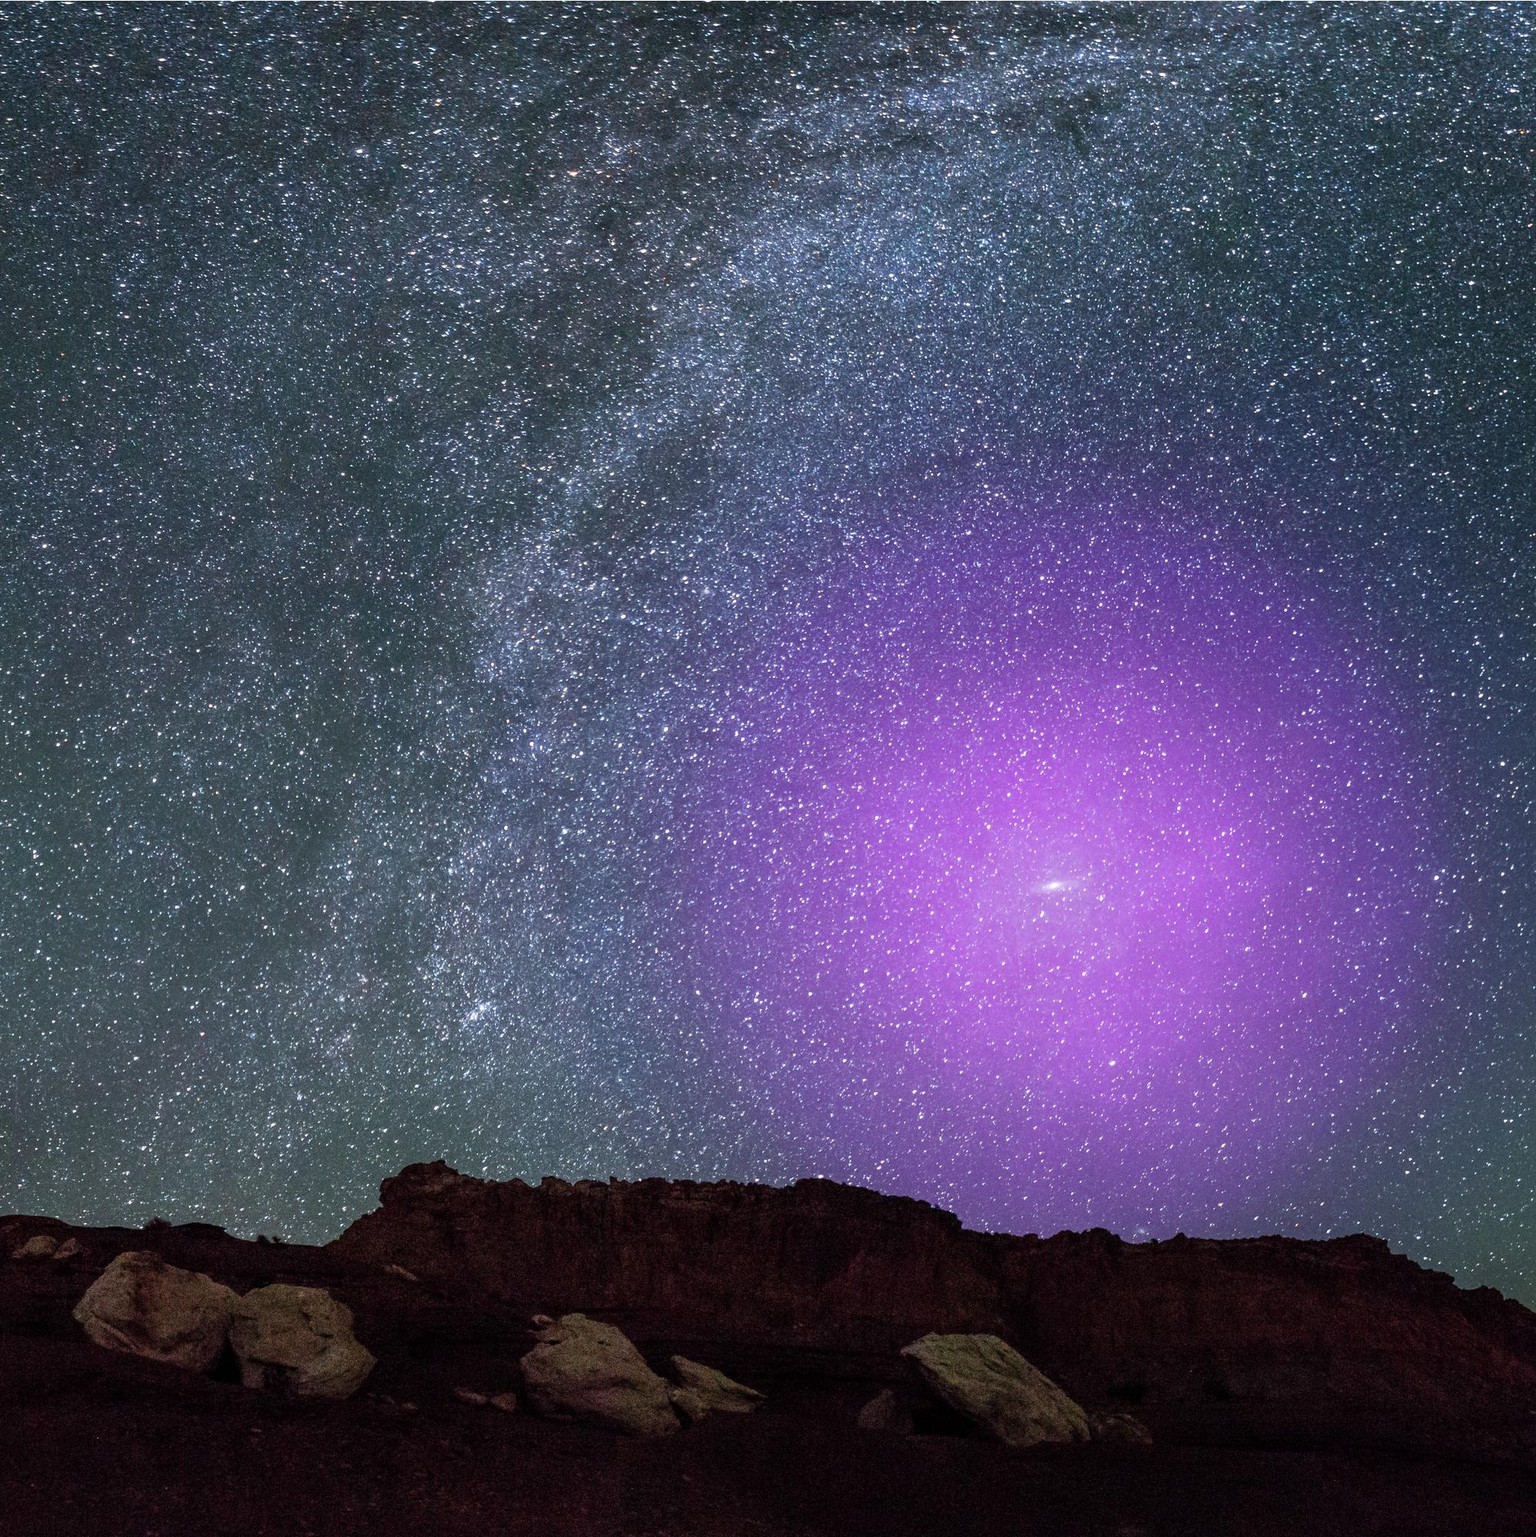 Der Halo der Andromeda-Galaxie sichtbar gemacht am irdischen Nachthimmel.
https://www.nasa.gov/mission_pages/hubble/science/milky-way-collide.html